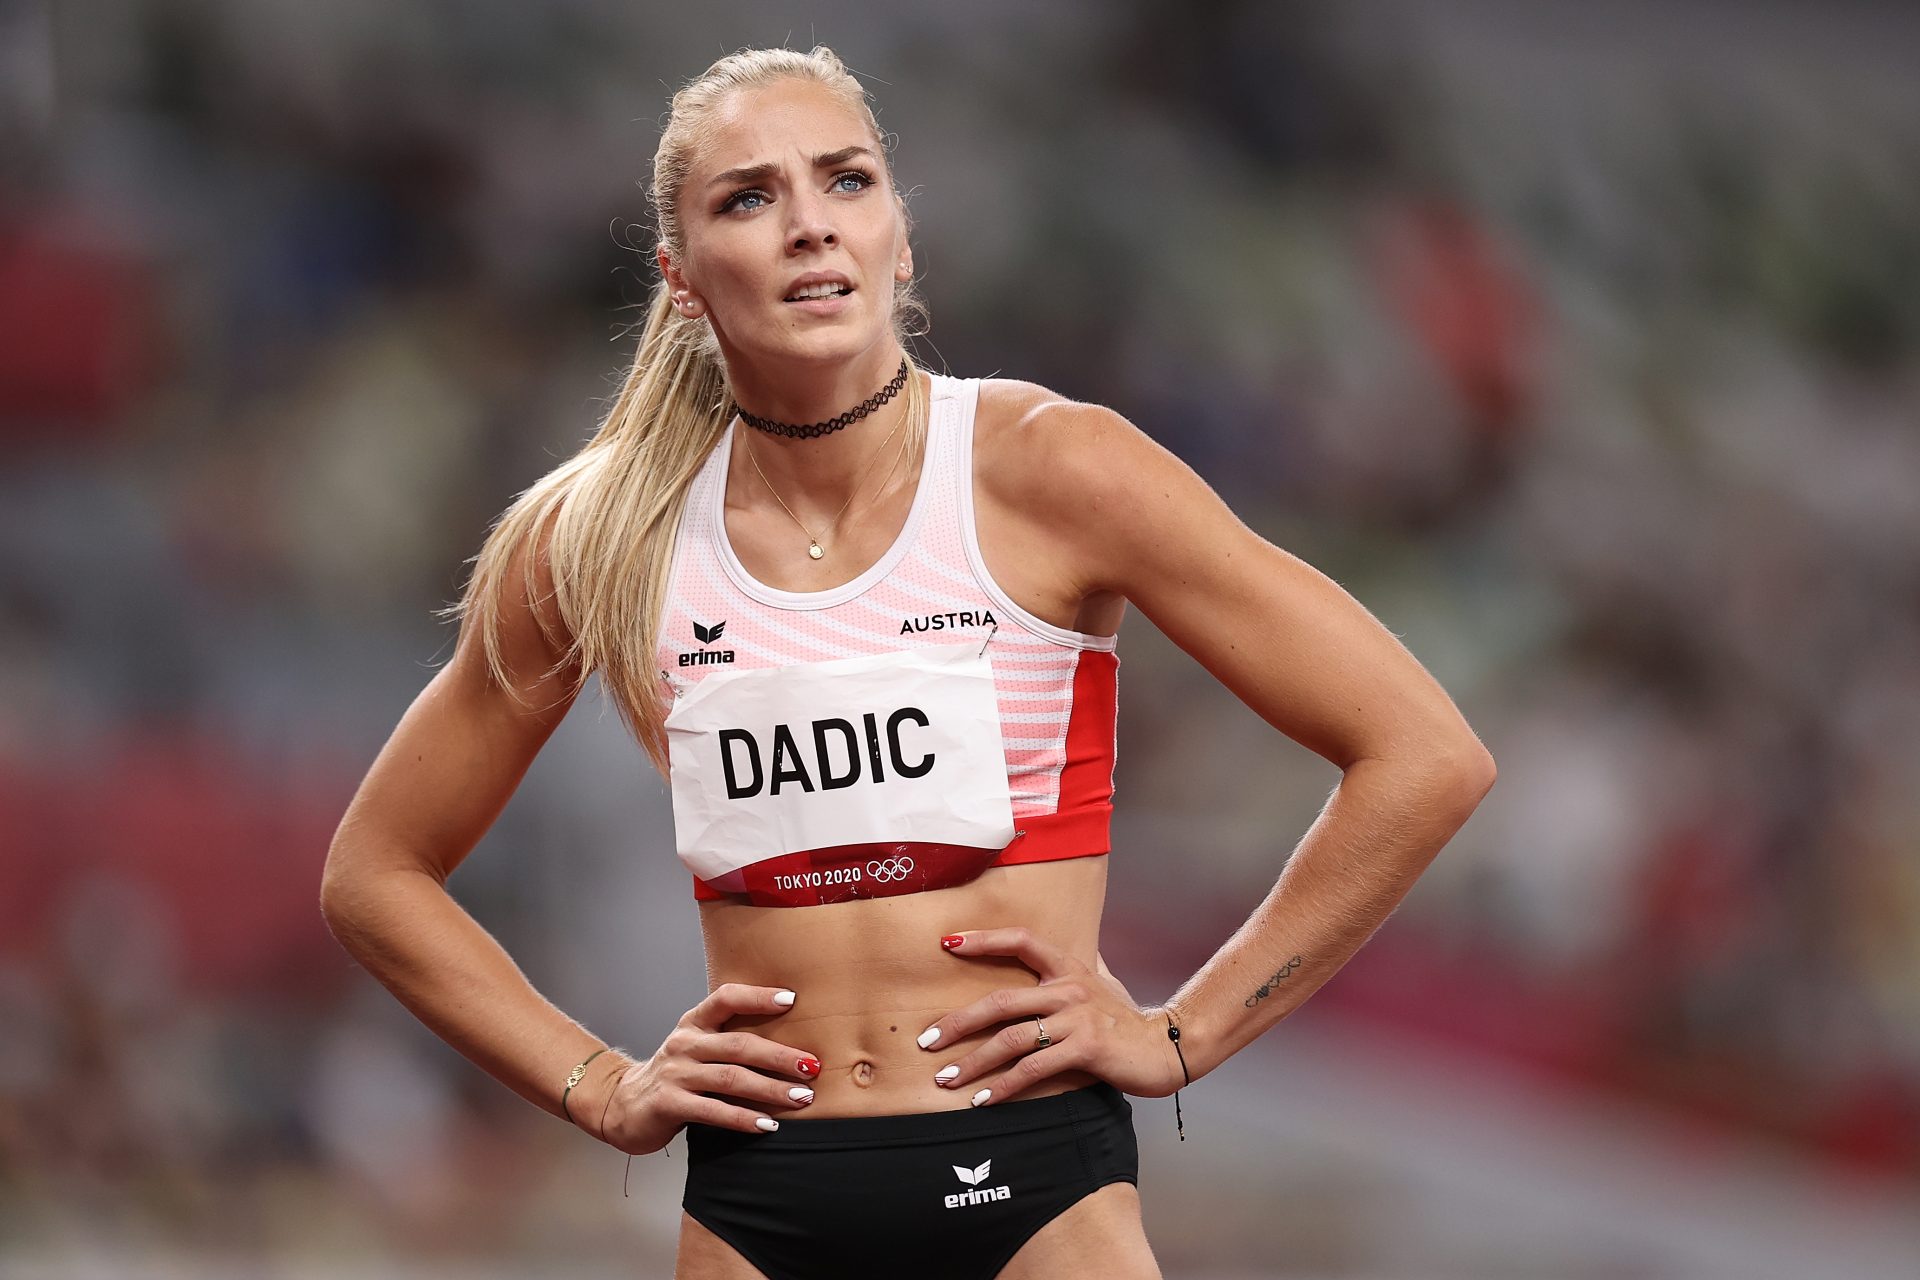 Por qué Ivona Dadic es la sensación del atletismo austriaco